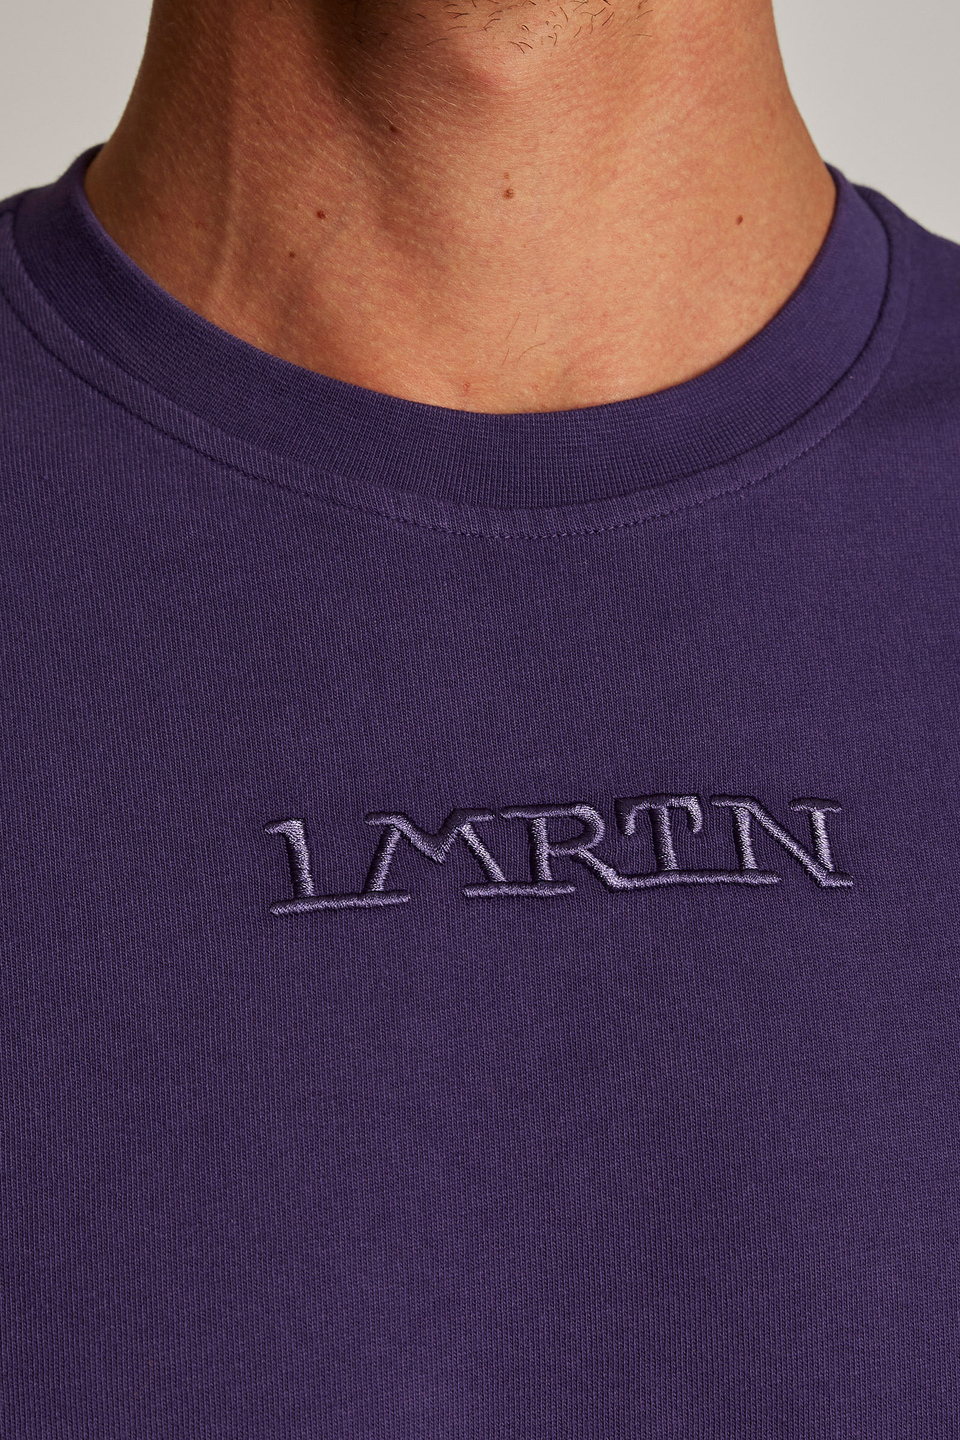 T-shirt da uomo in cotone a maniche corte modello over | La Martina - Official Online Shop